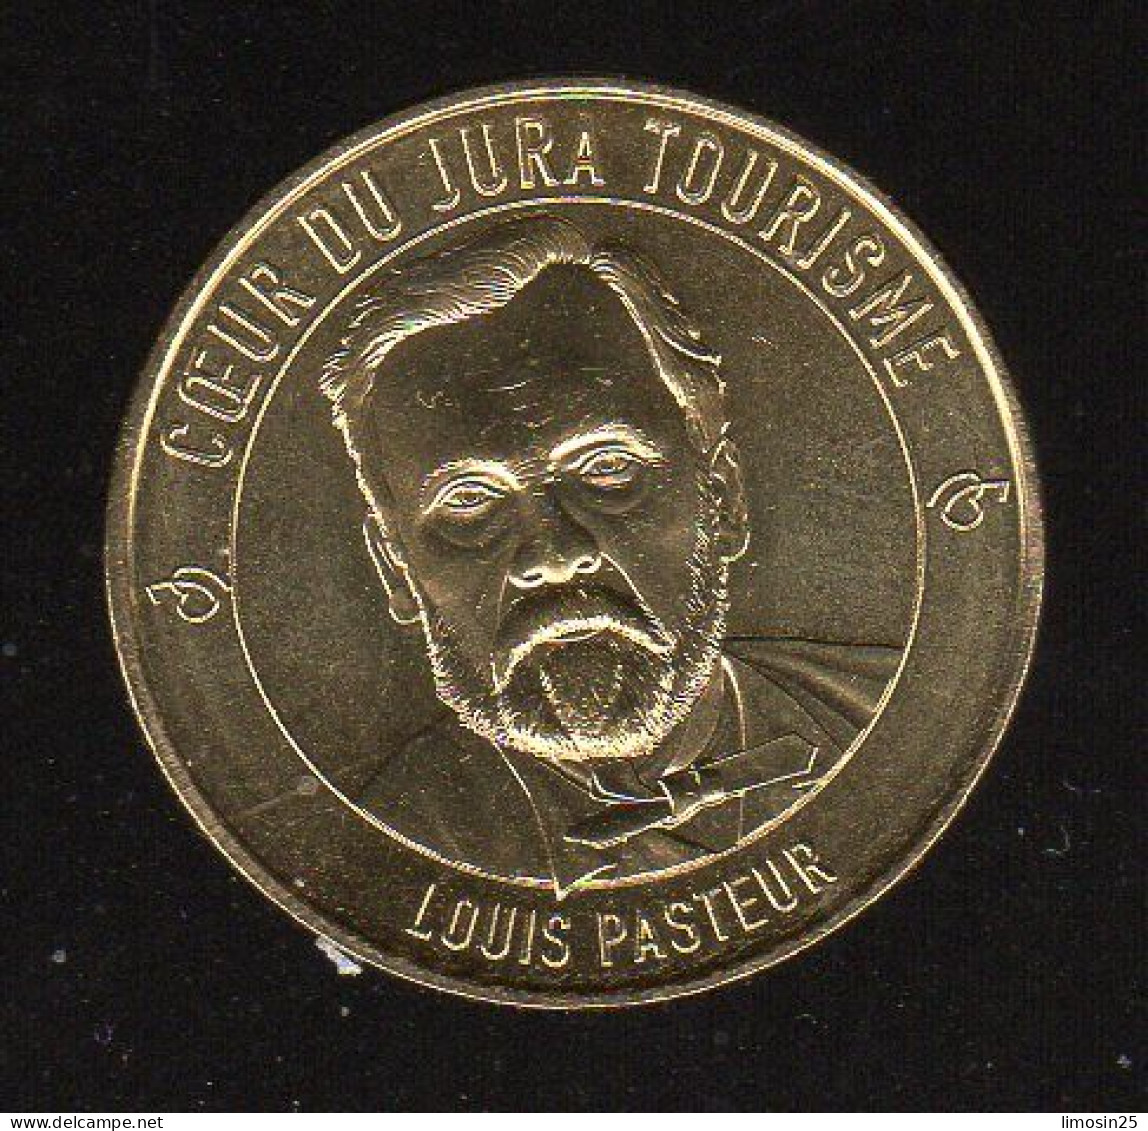 Cœur De Jura - Louis Pasteur - 2020 - 2020